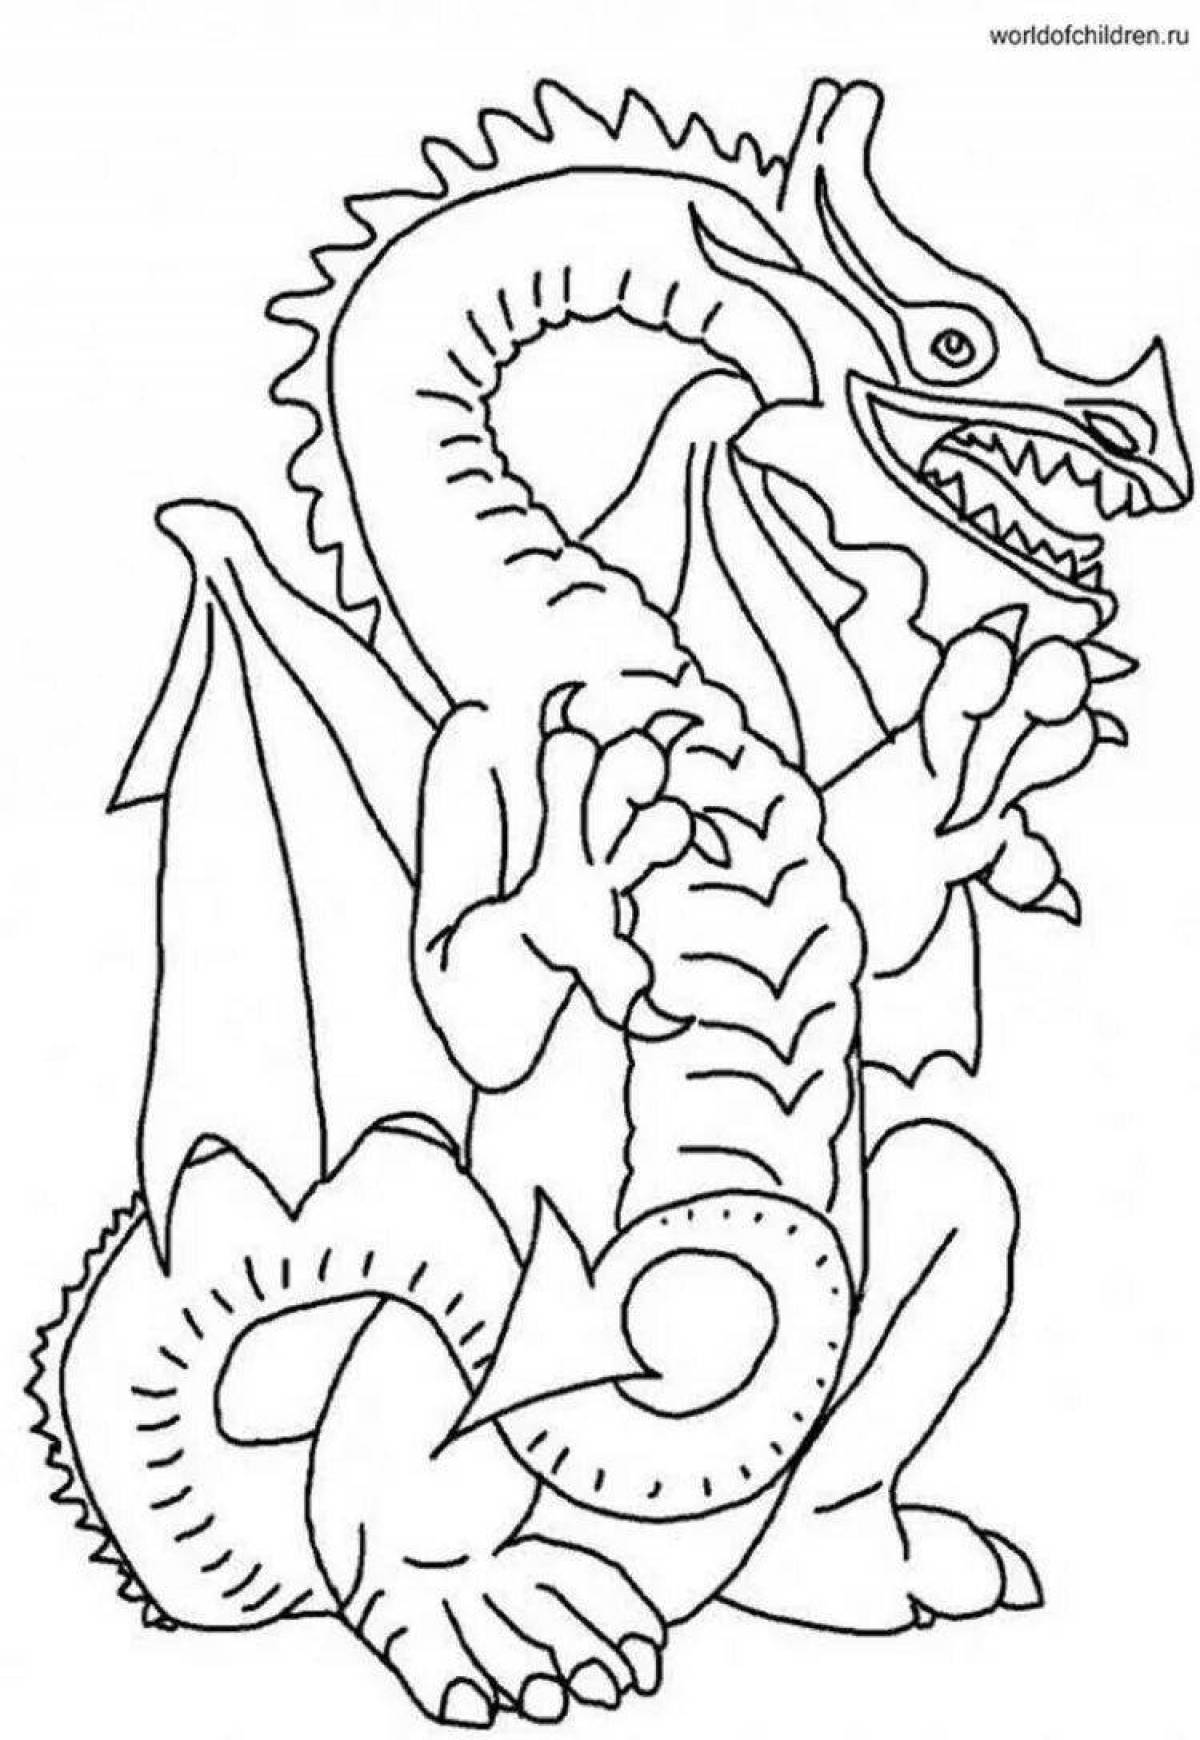 Очаровательная раскраска дракон для детей